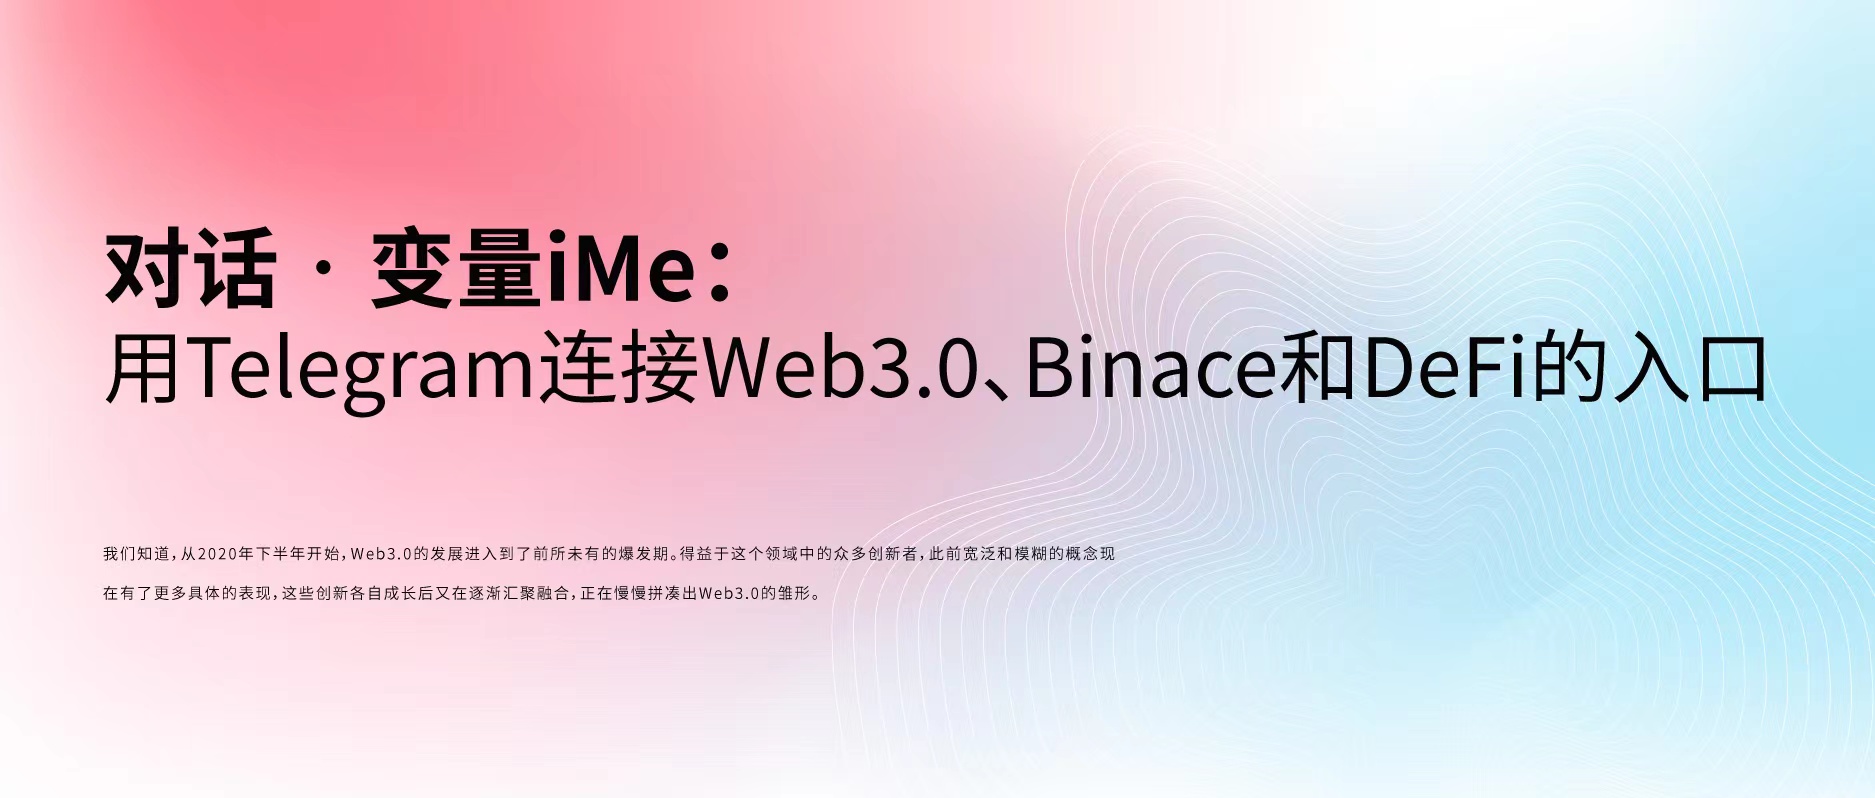 对话•变量iMe：用Telegram连接Web3.0、Binace和DeFi的入口